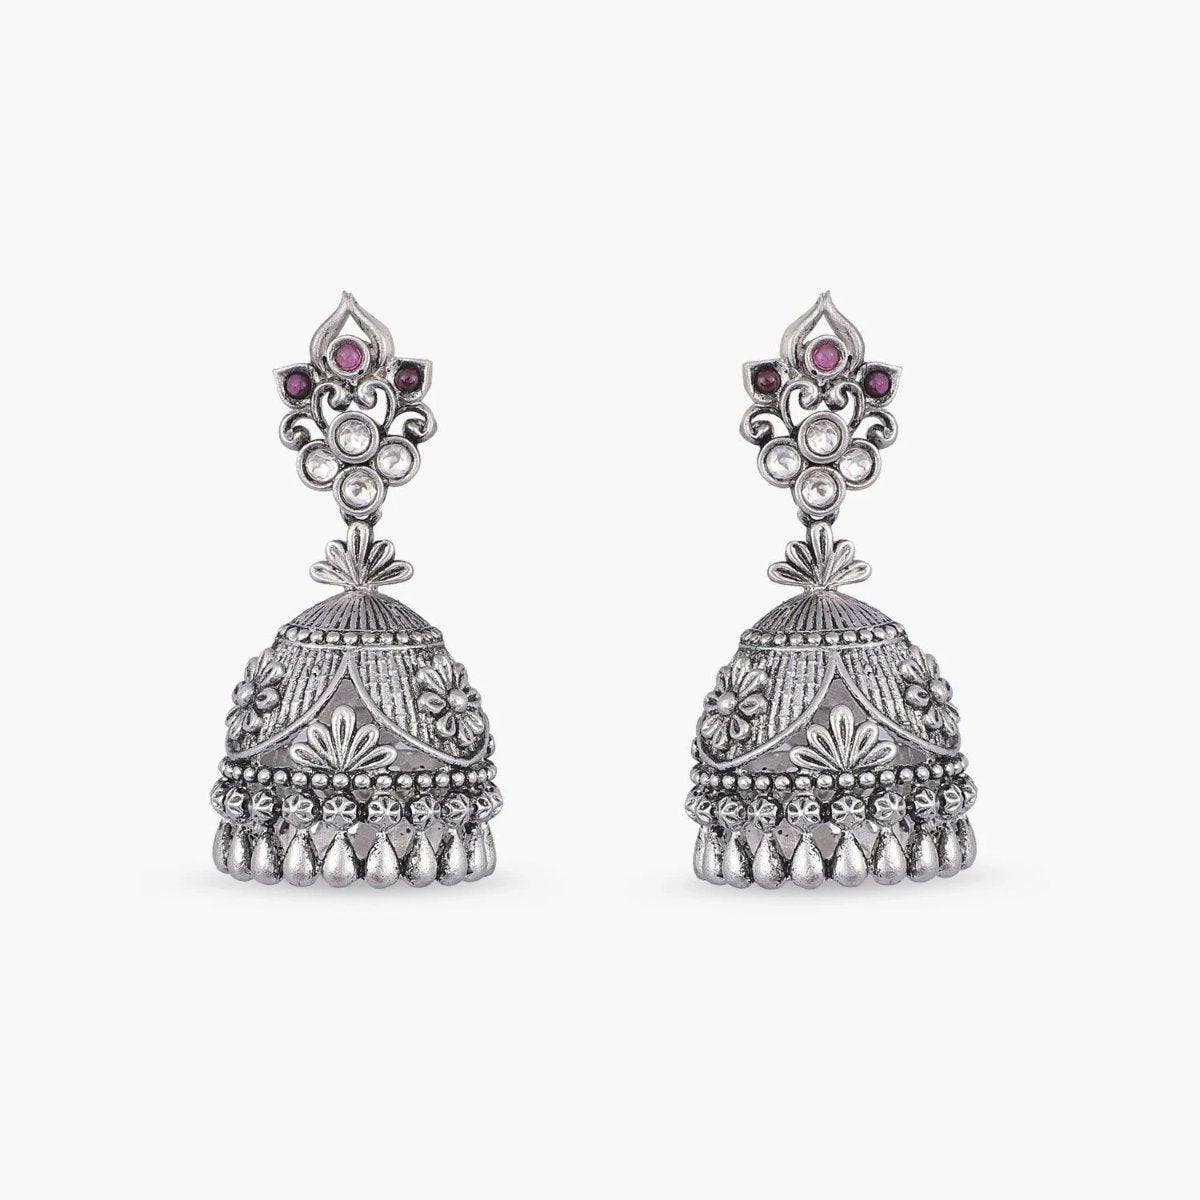 Buy Beautiful Kundan Jhumka Earrings Set, Indian Women Earrings Jewelry  Set, Gold Plated Earrings, Online in India - Etsy